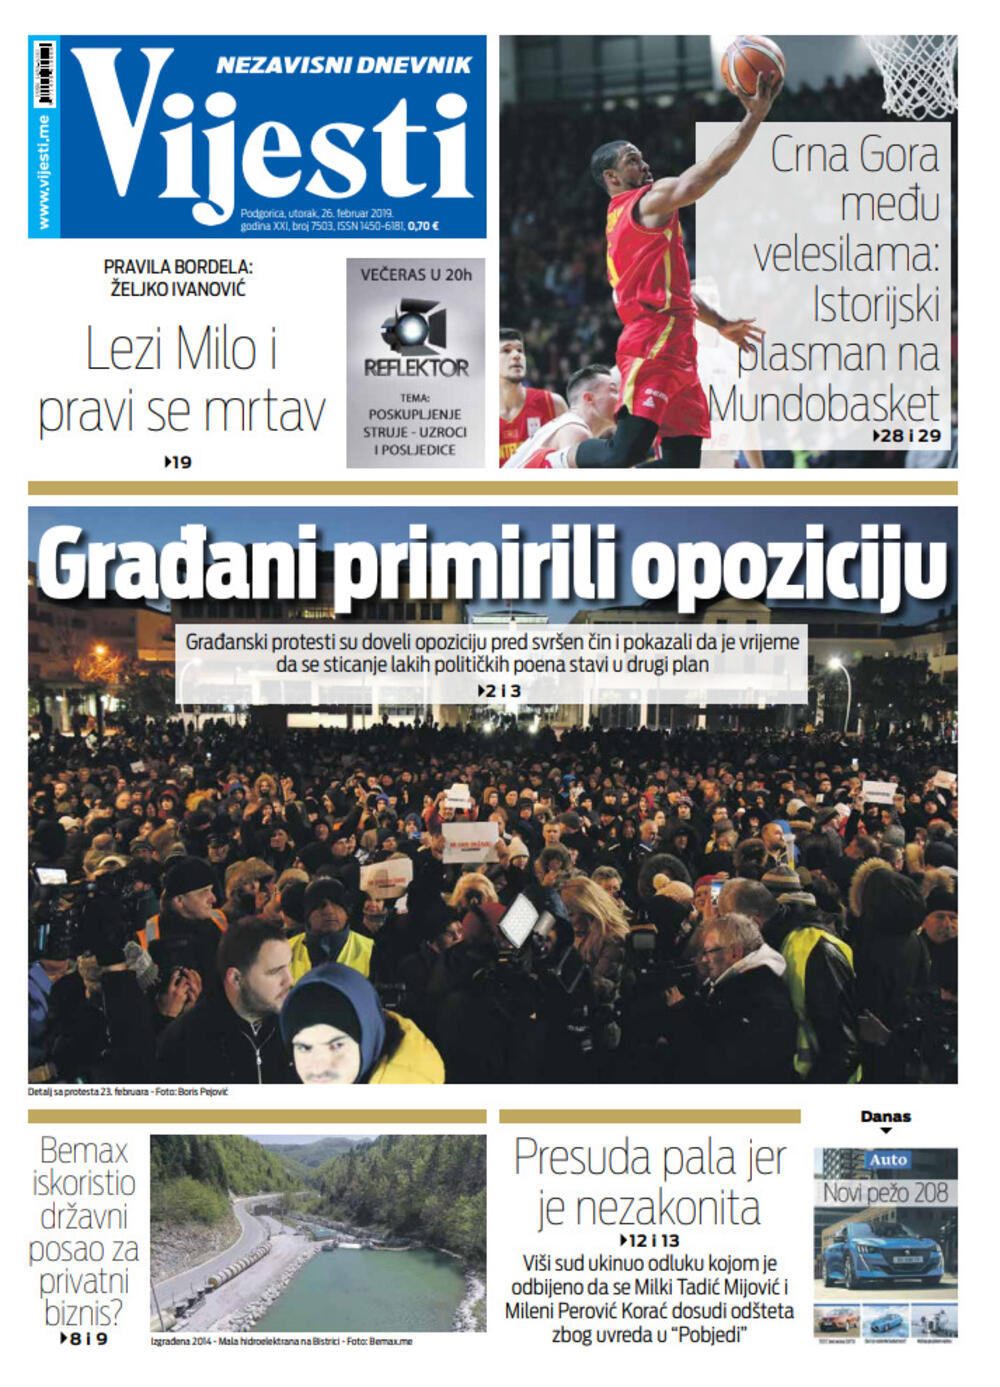 Naslovna strana "Vijesti za 26. februar, Foto: Vijesti